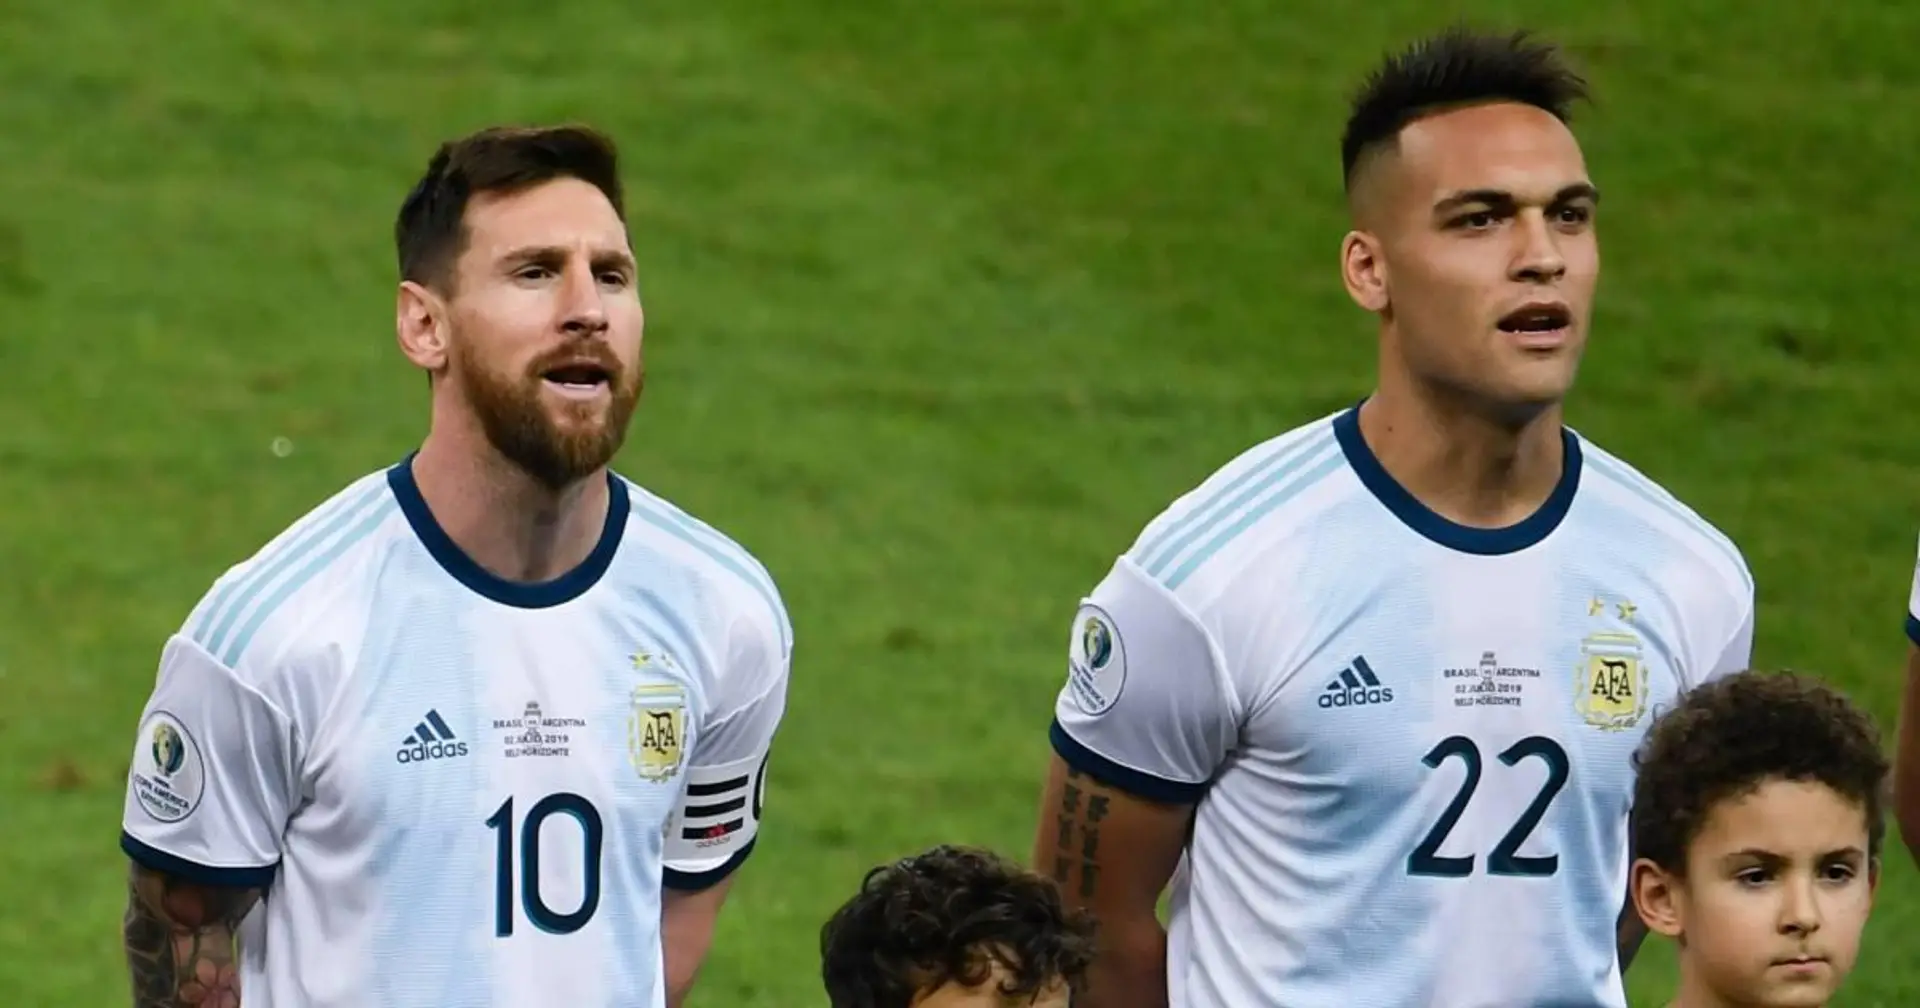 "Jouer aux côtés de Messi est un rêve pour lui": l'agent de Lautaro, Yaque, ravive les rumeurs de transfert au Barça